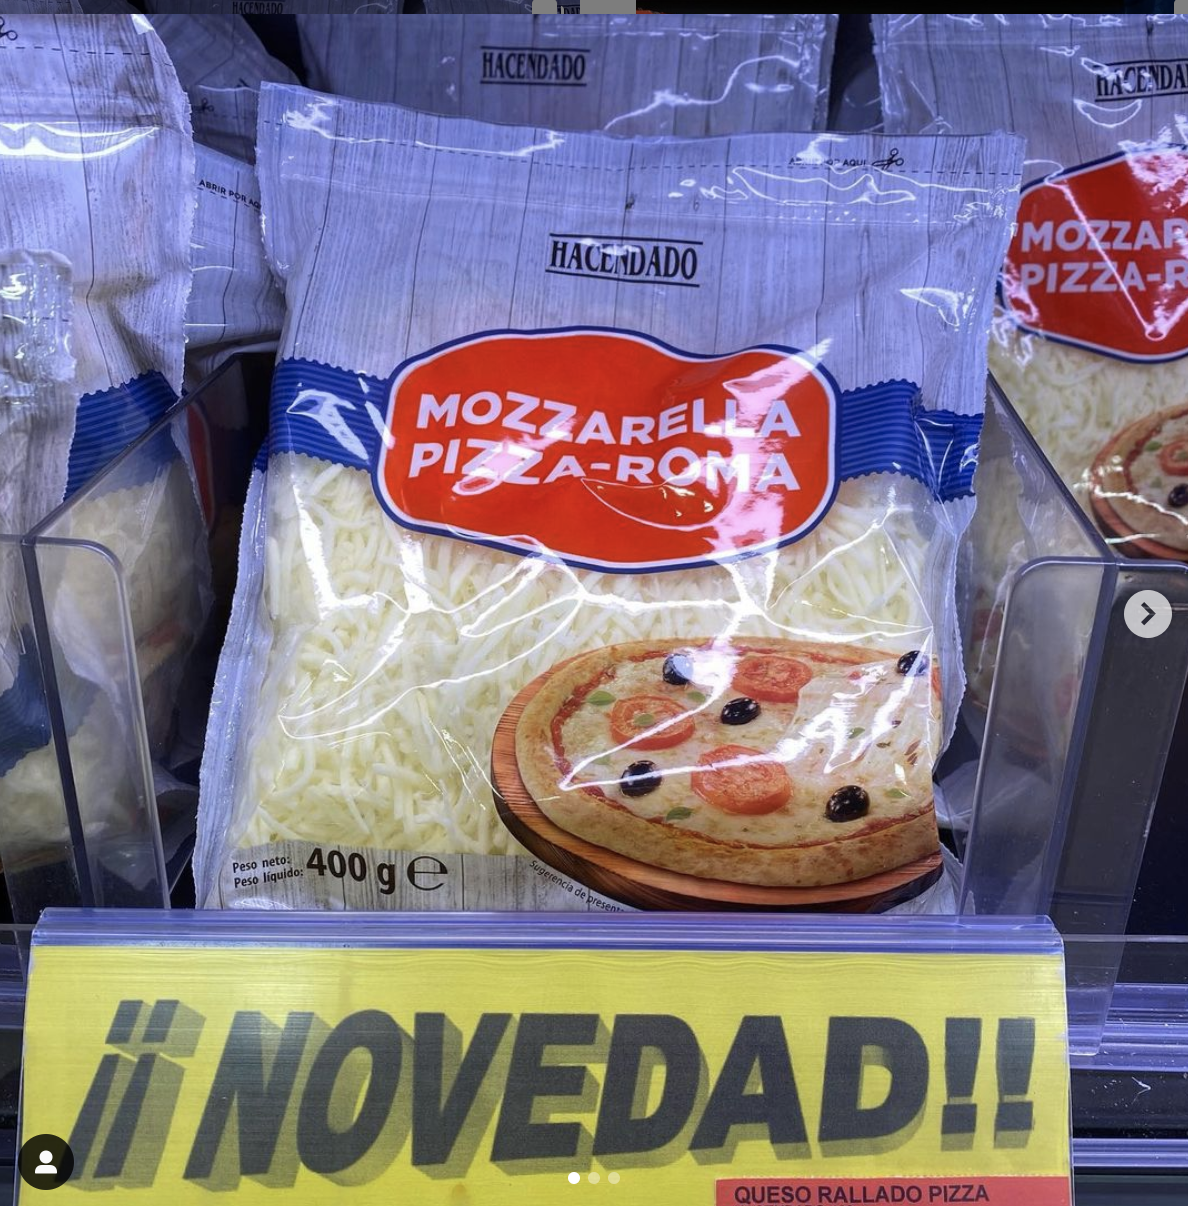 Este es el queso bajo en calorías de Hacendado que arrasa en Mercadona. Foto: Instagram mercadona.novedades